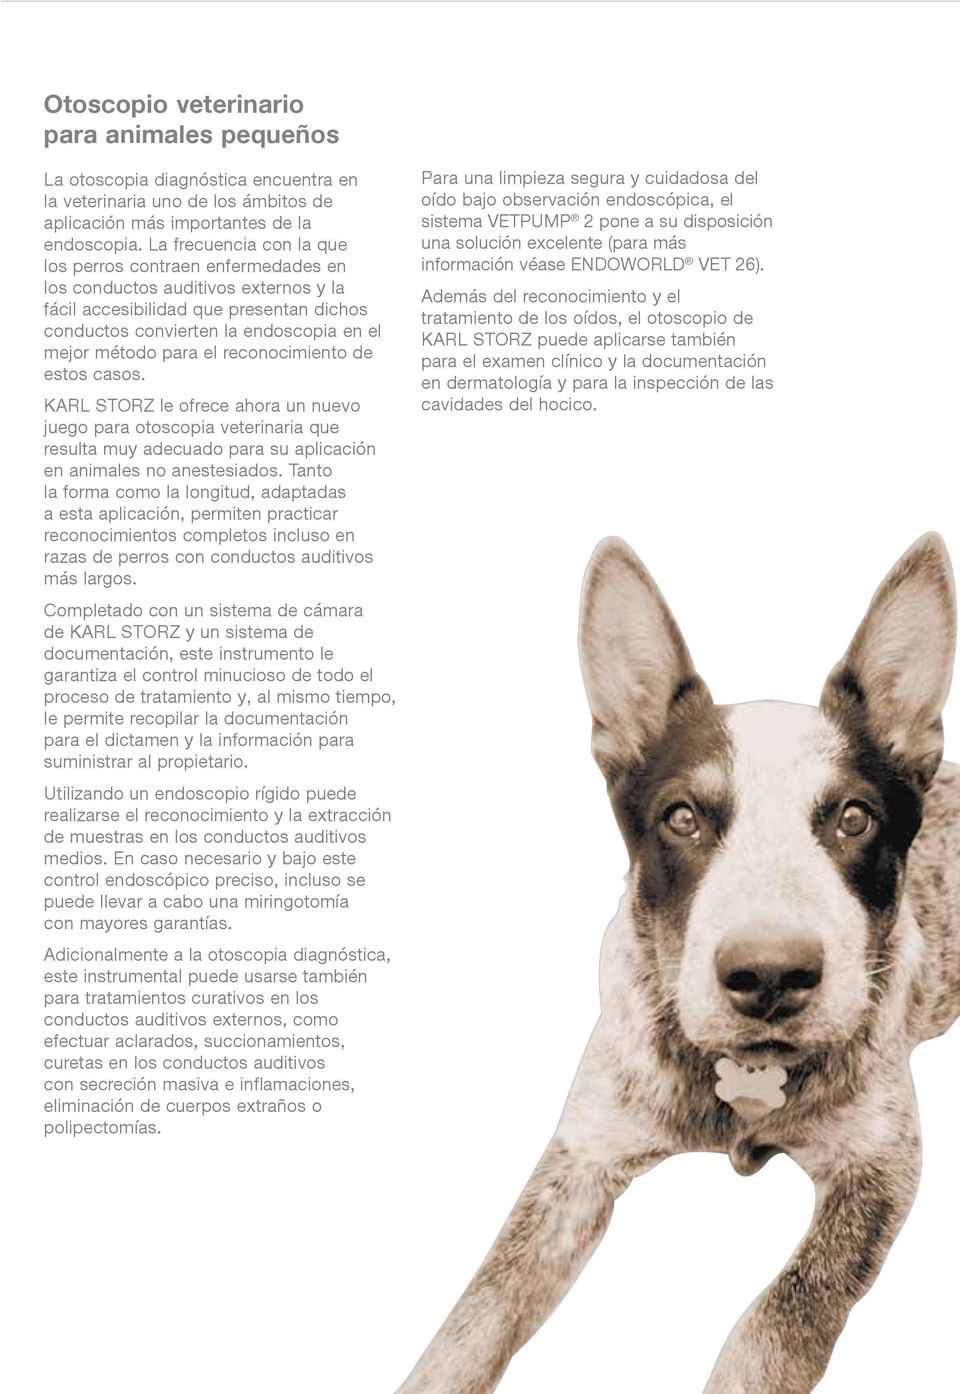 el reconocimiento de estos casos. KARL STORZ le ofrece ahora un nuevo juego para otoscopia veterinaria que resulta muy adecuado para su aplicación en animales no anestesiados.